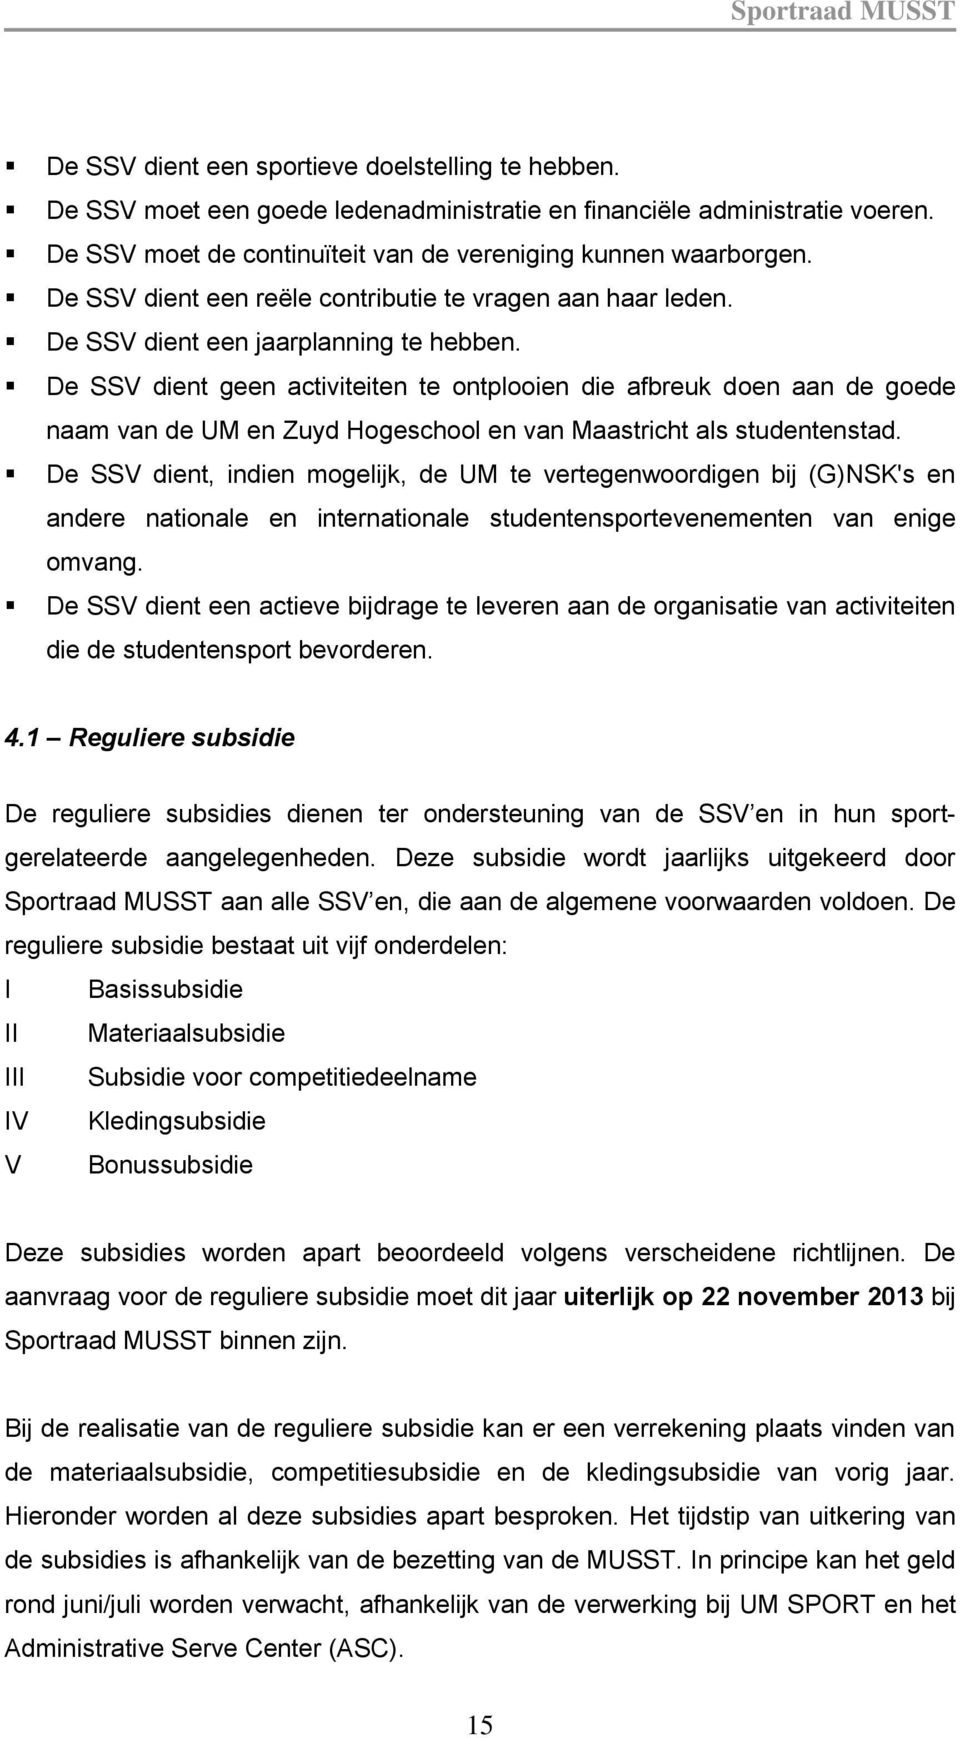 De SSV dient geen activiteiten te ontplooien die afbreuk doen aan de goede naam van de UM en Zuyd Hogeschool en van Maastricht als studentenstad.